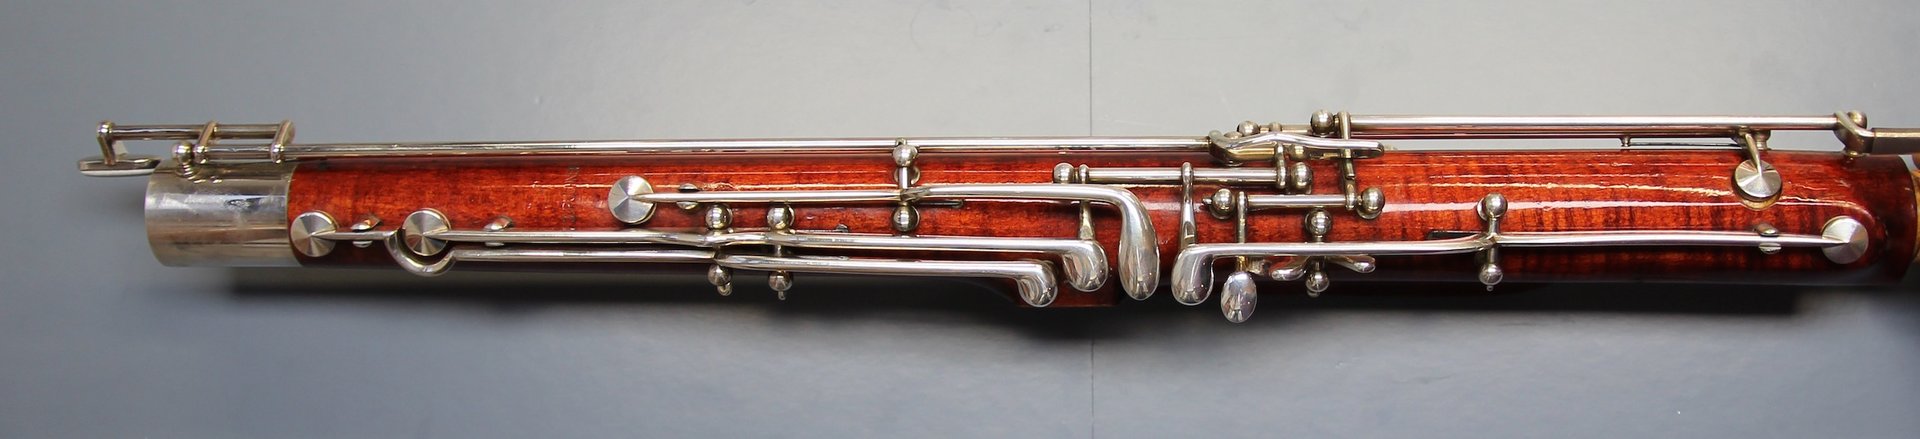 Gebrauchtes Fagott Püchner Modell 23 Nauheim